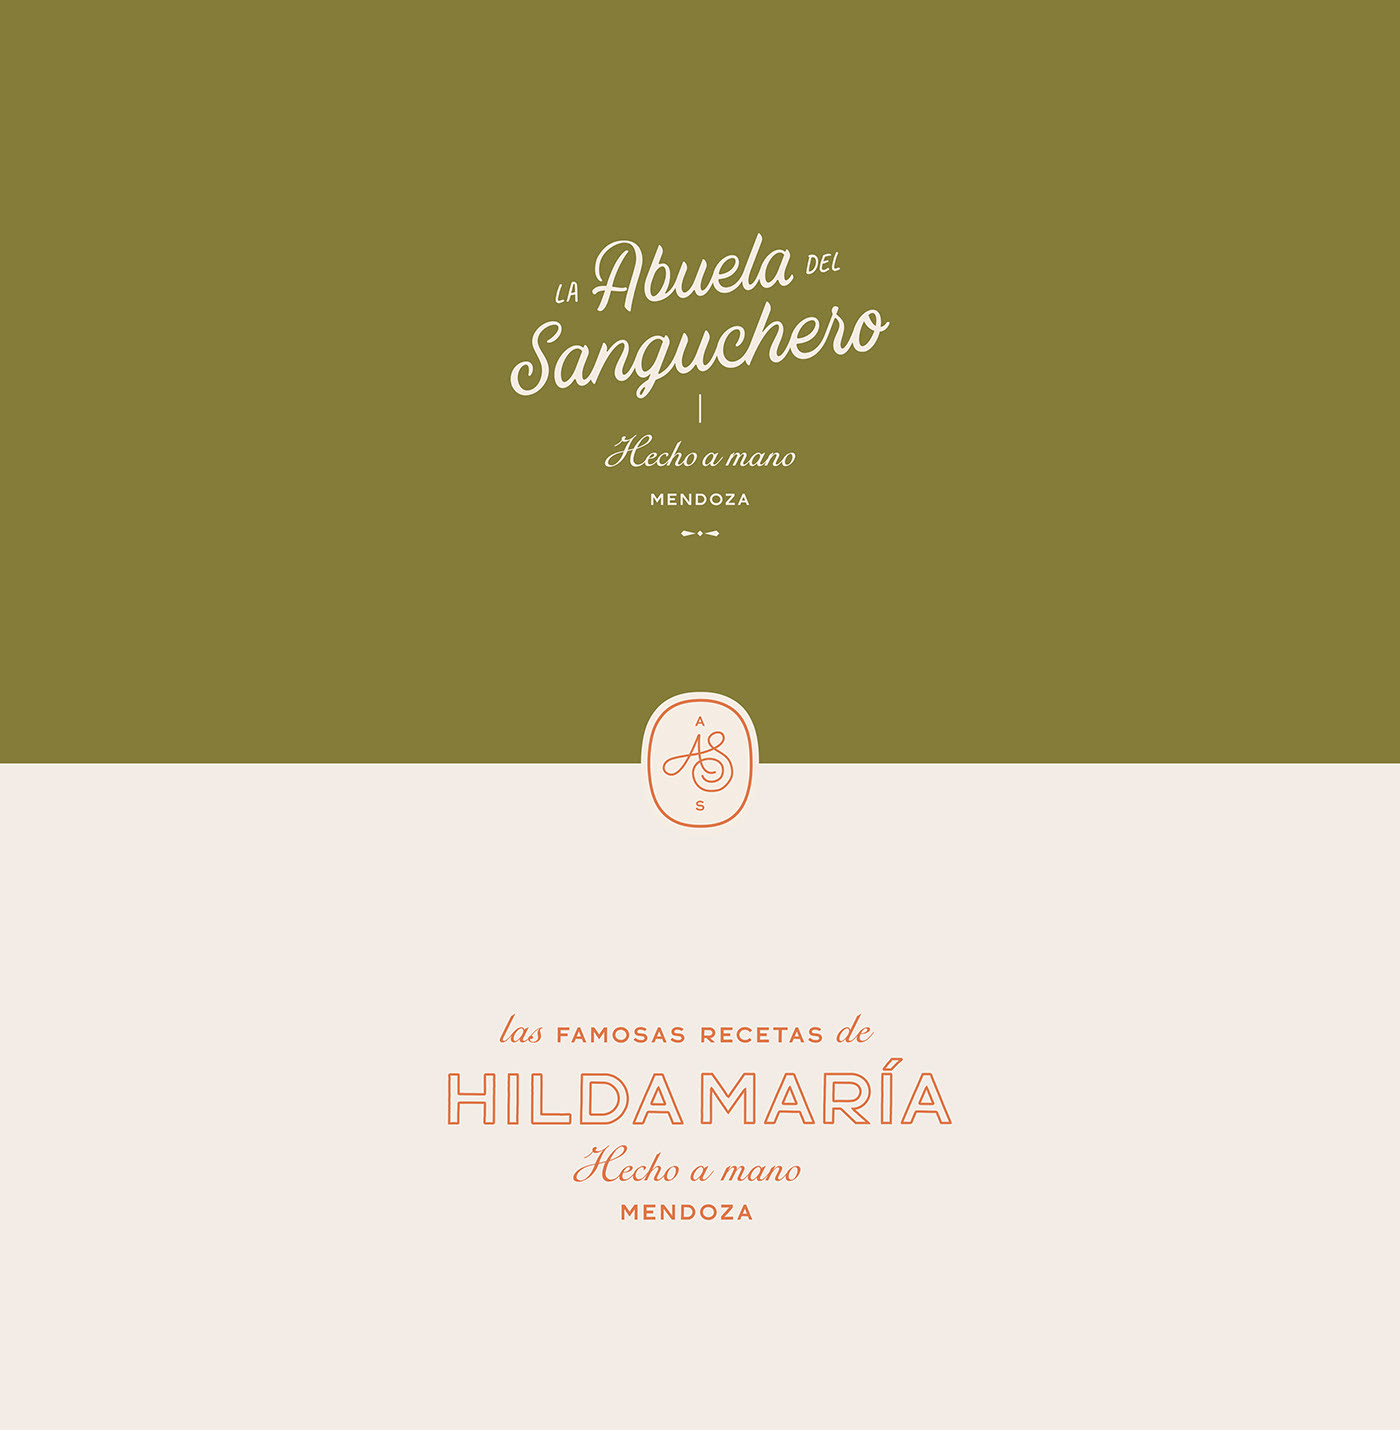 HILDA MARIA轻食餐厅品牌全案设计